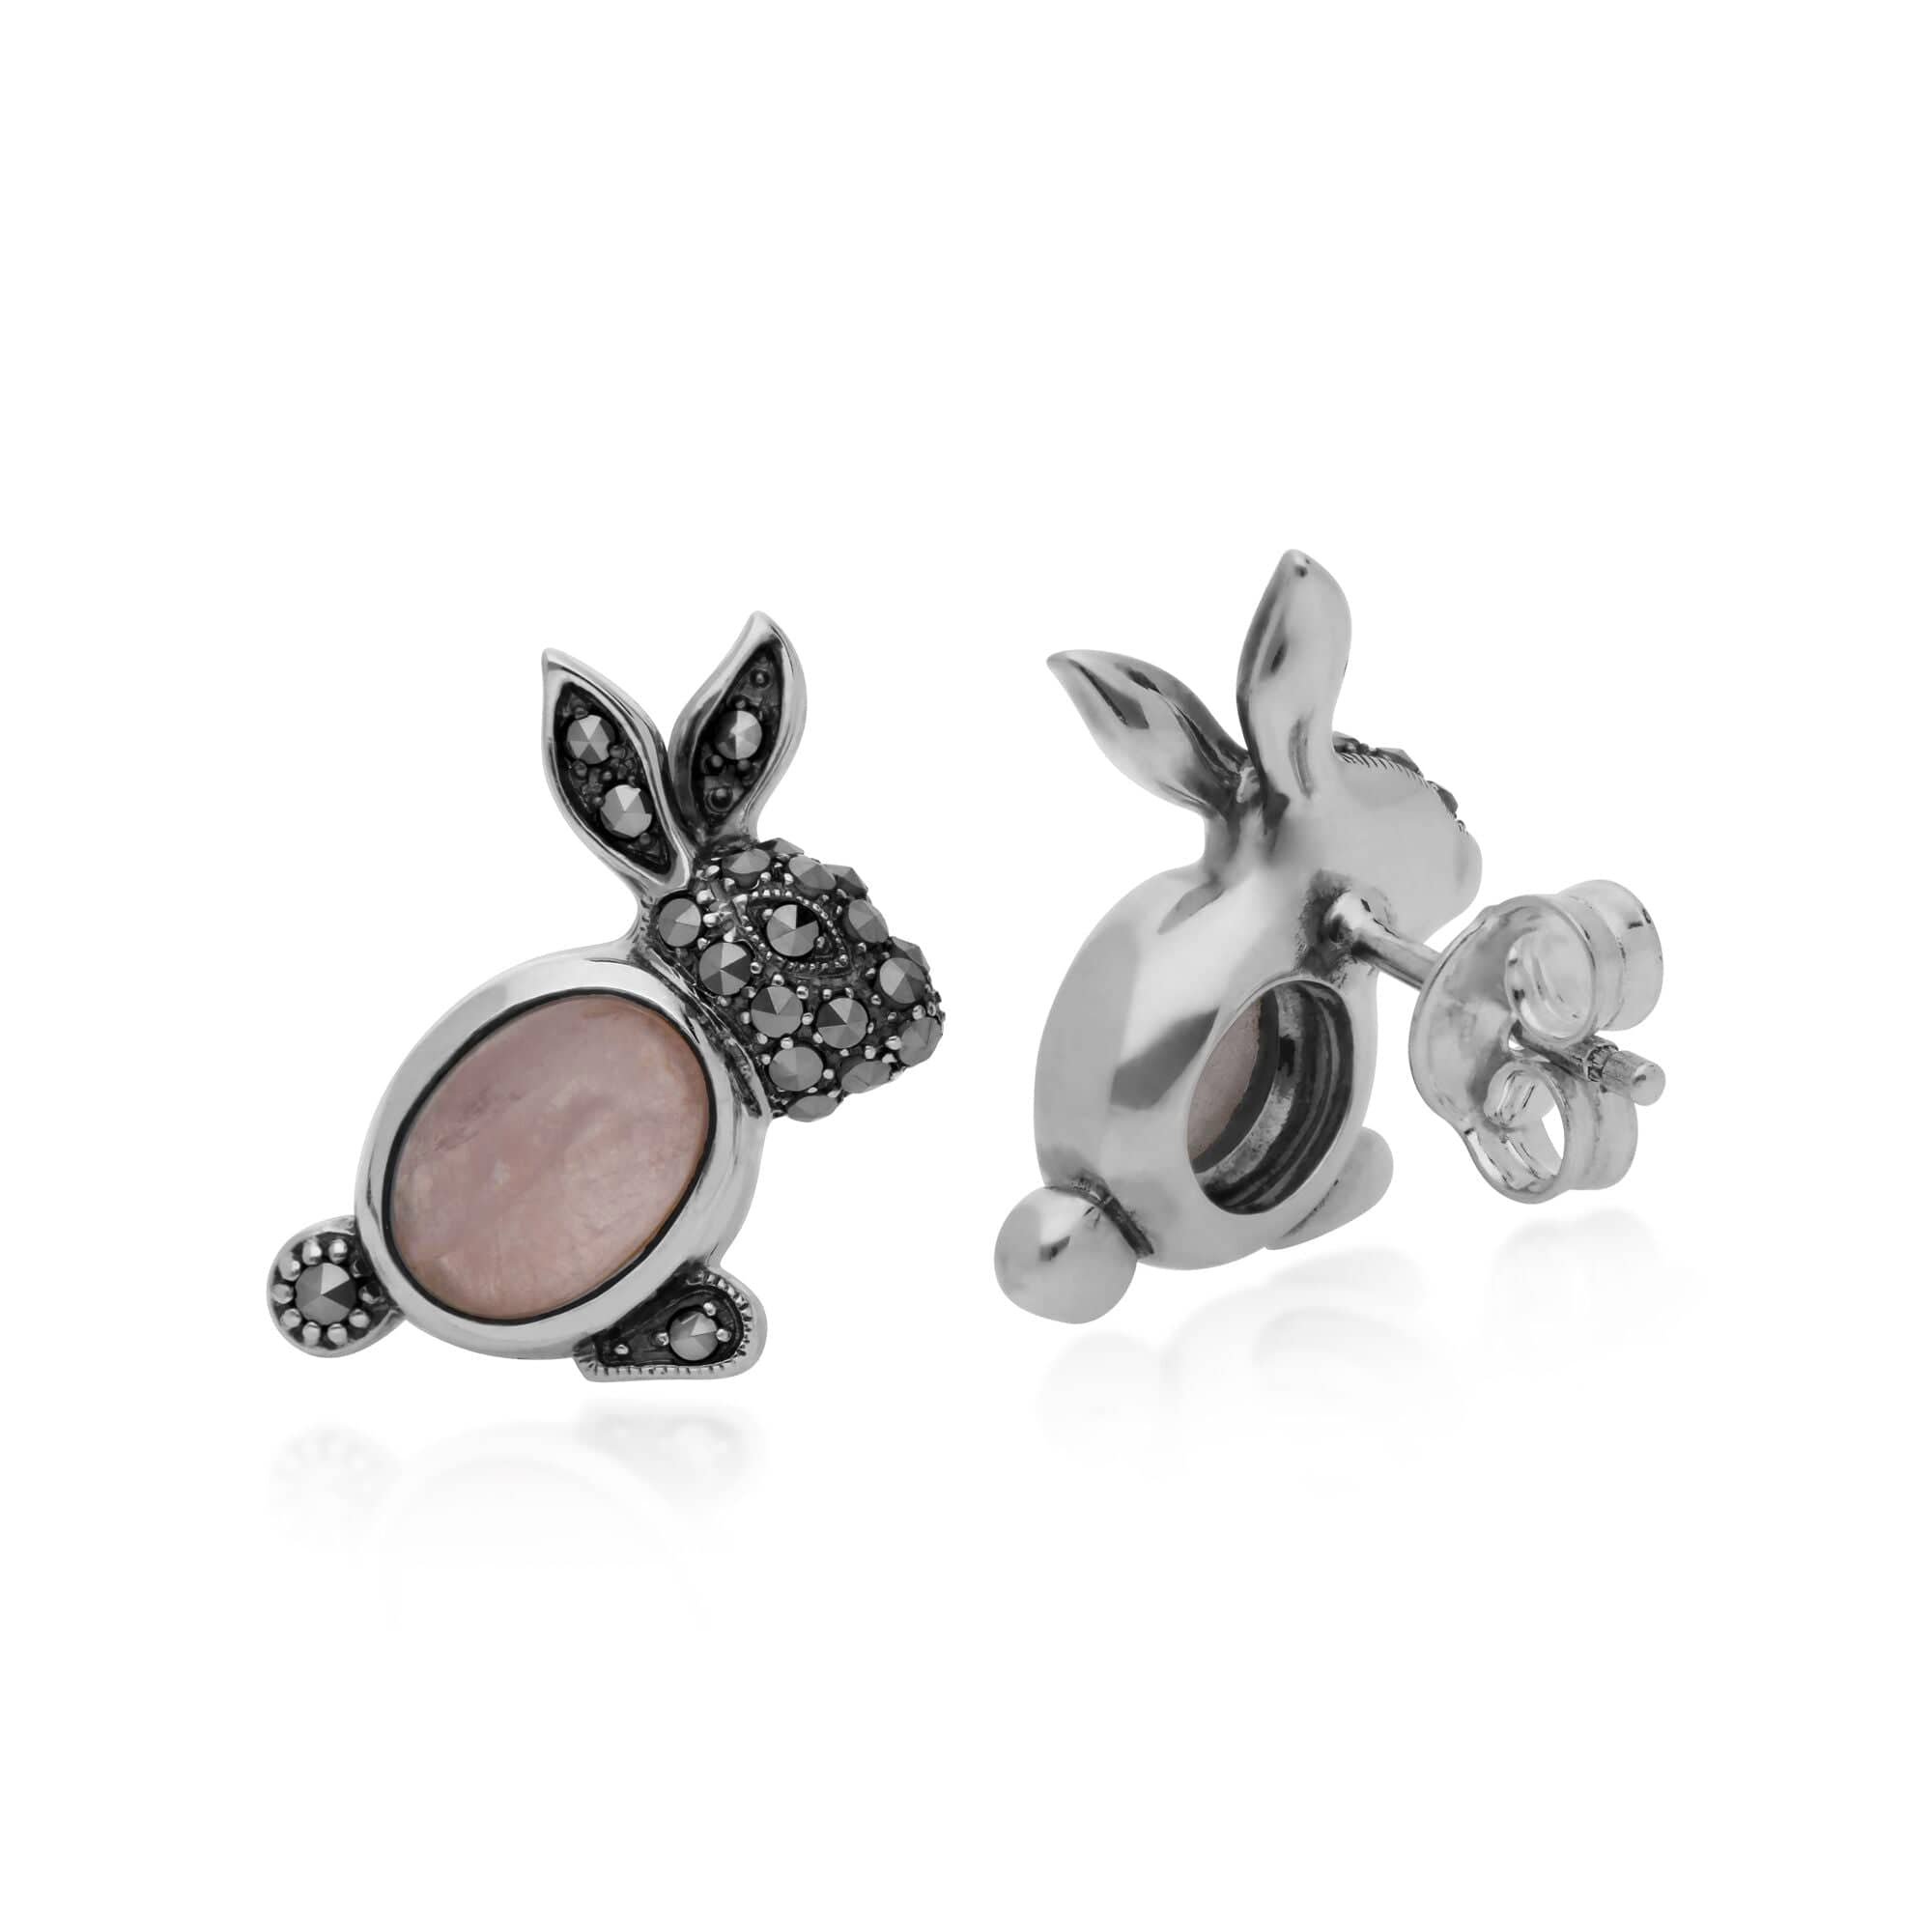 214E869201925 Gemondo Sterling Silver Rose Quartz & Marcasite Rabbit Stud Earrings 2